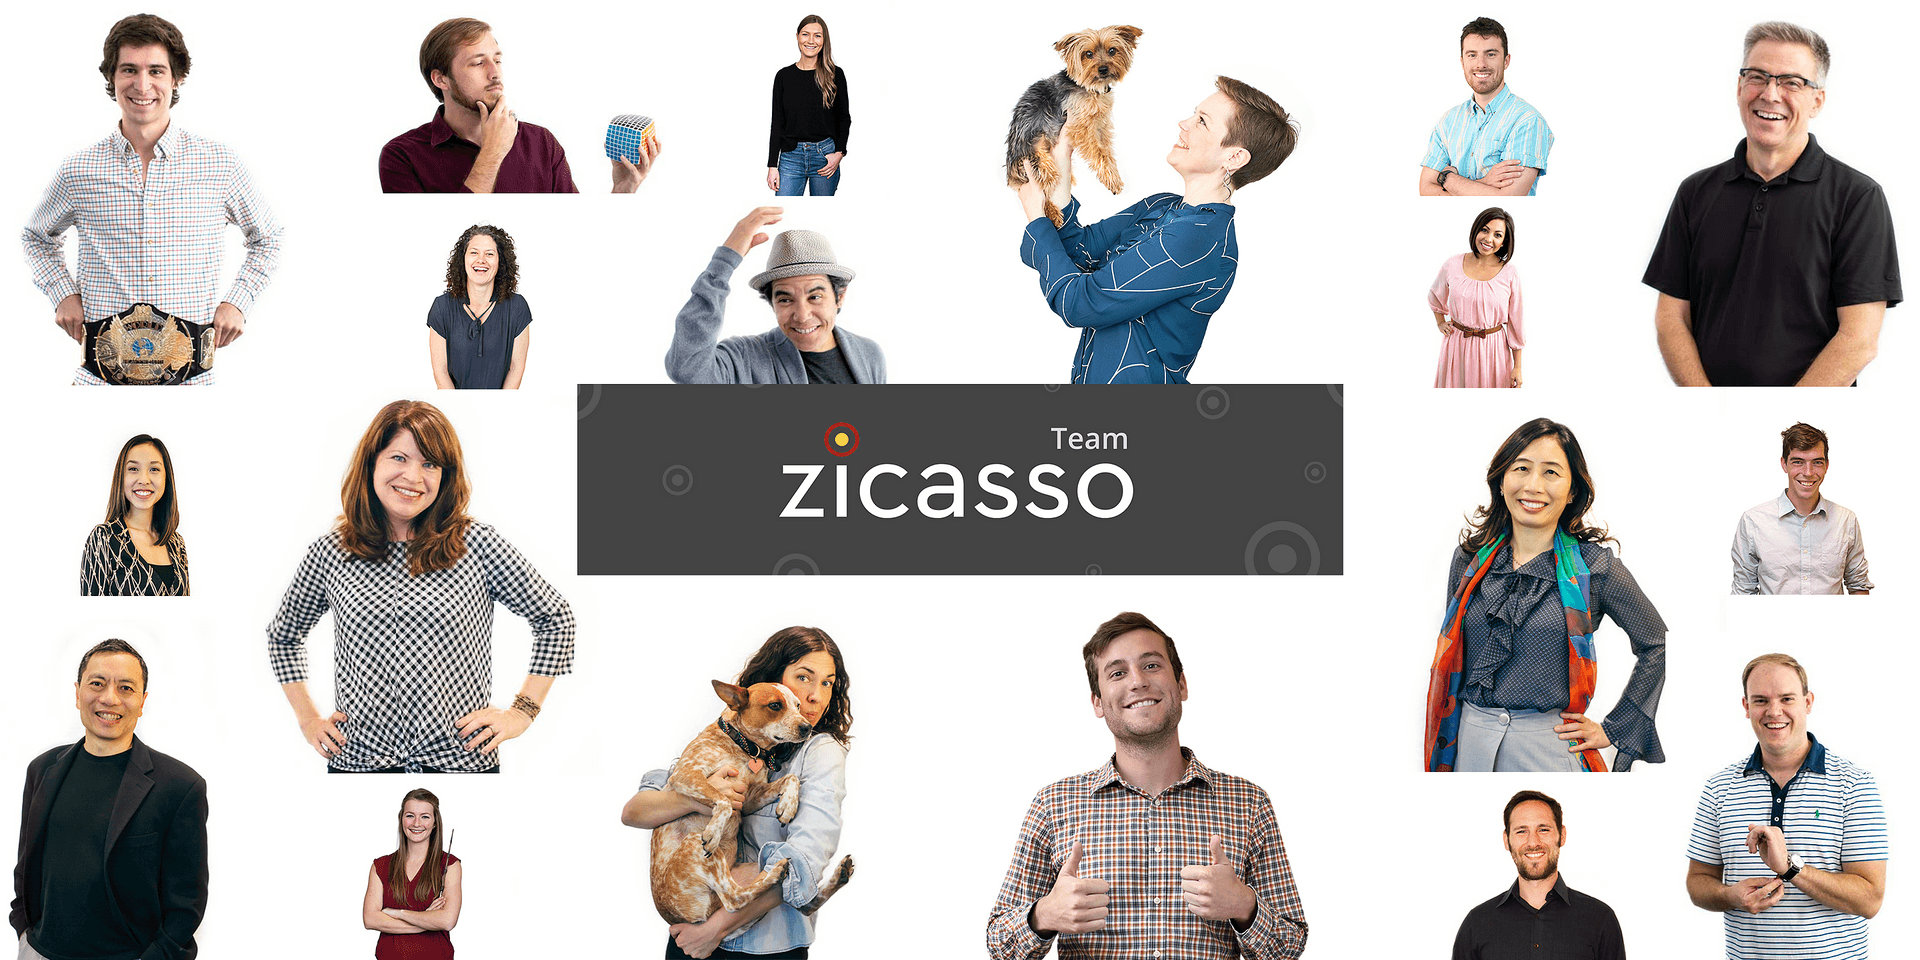 The Zicasso team